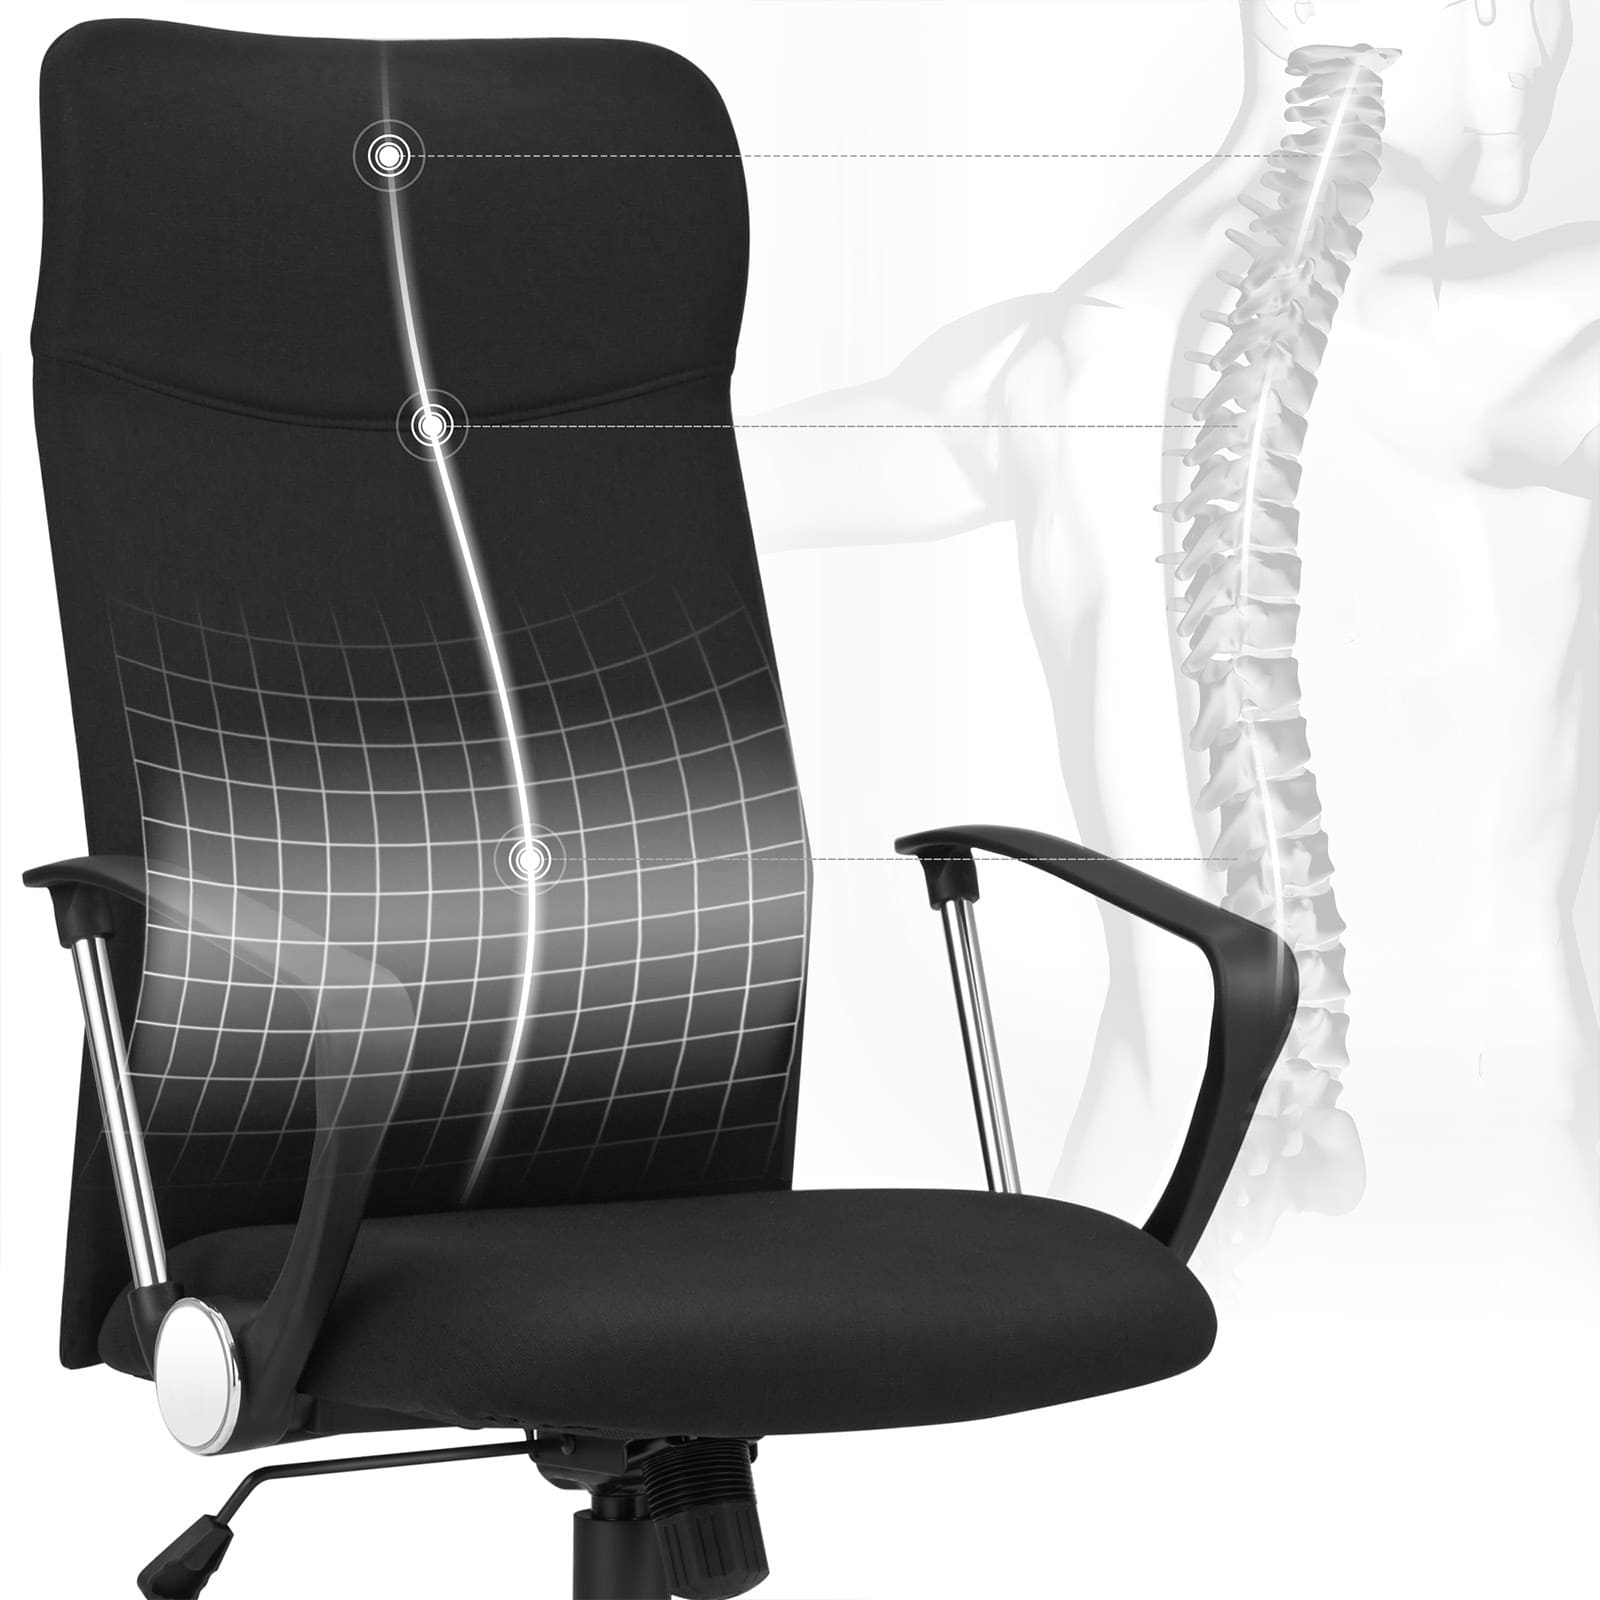 Eine ergonomische Rückenlehne für eine angenehme Sitzhaltung und Wippfunktion zur Entspannung Ihres Körpers